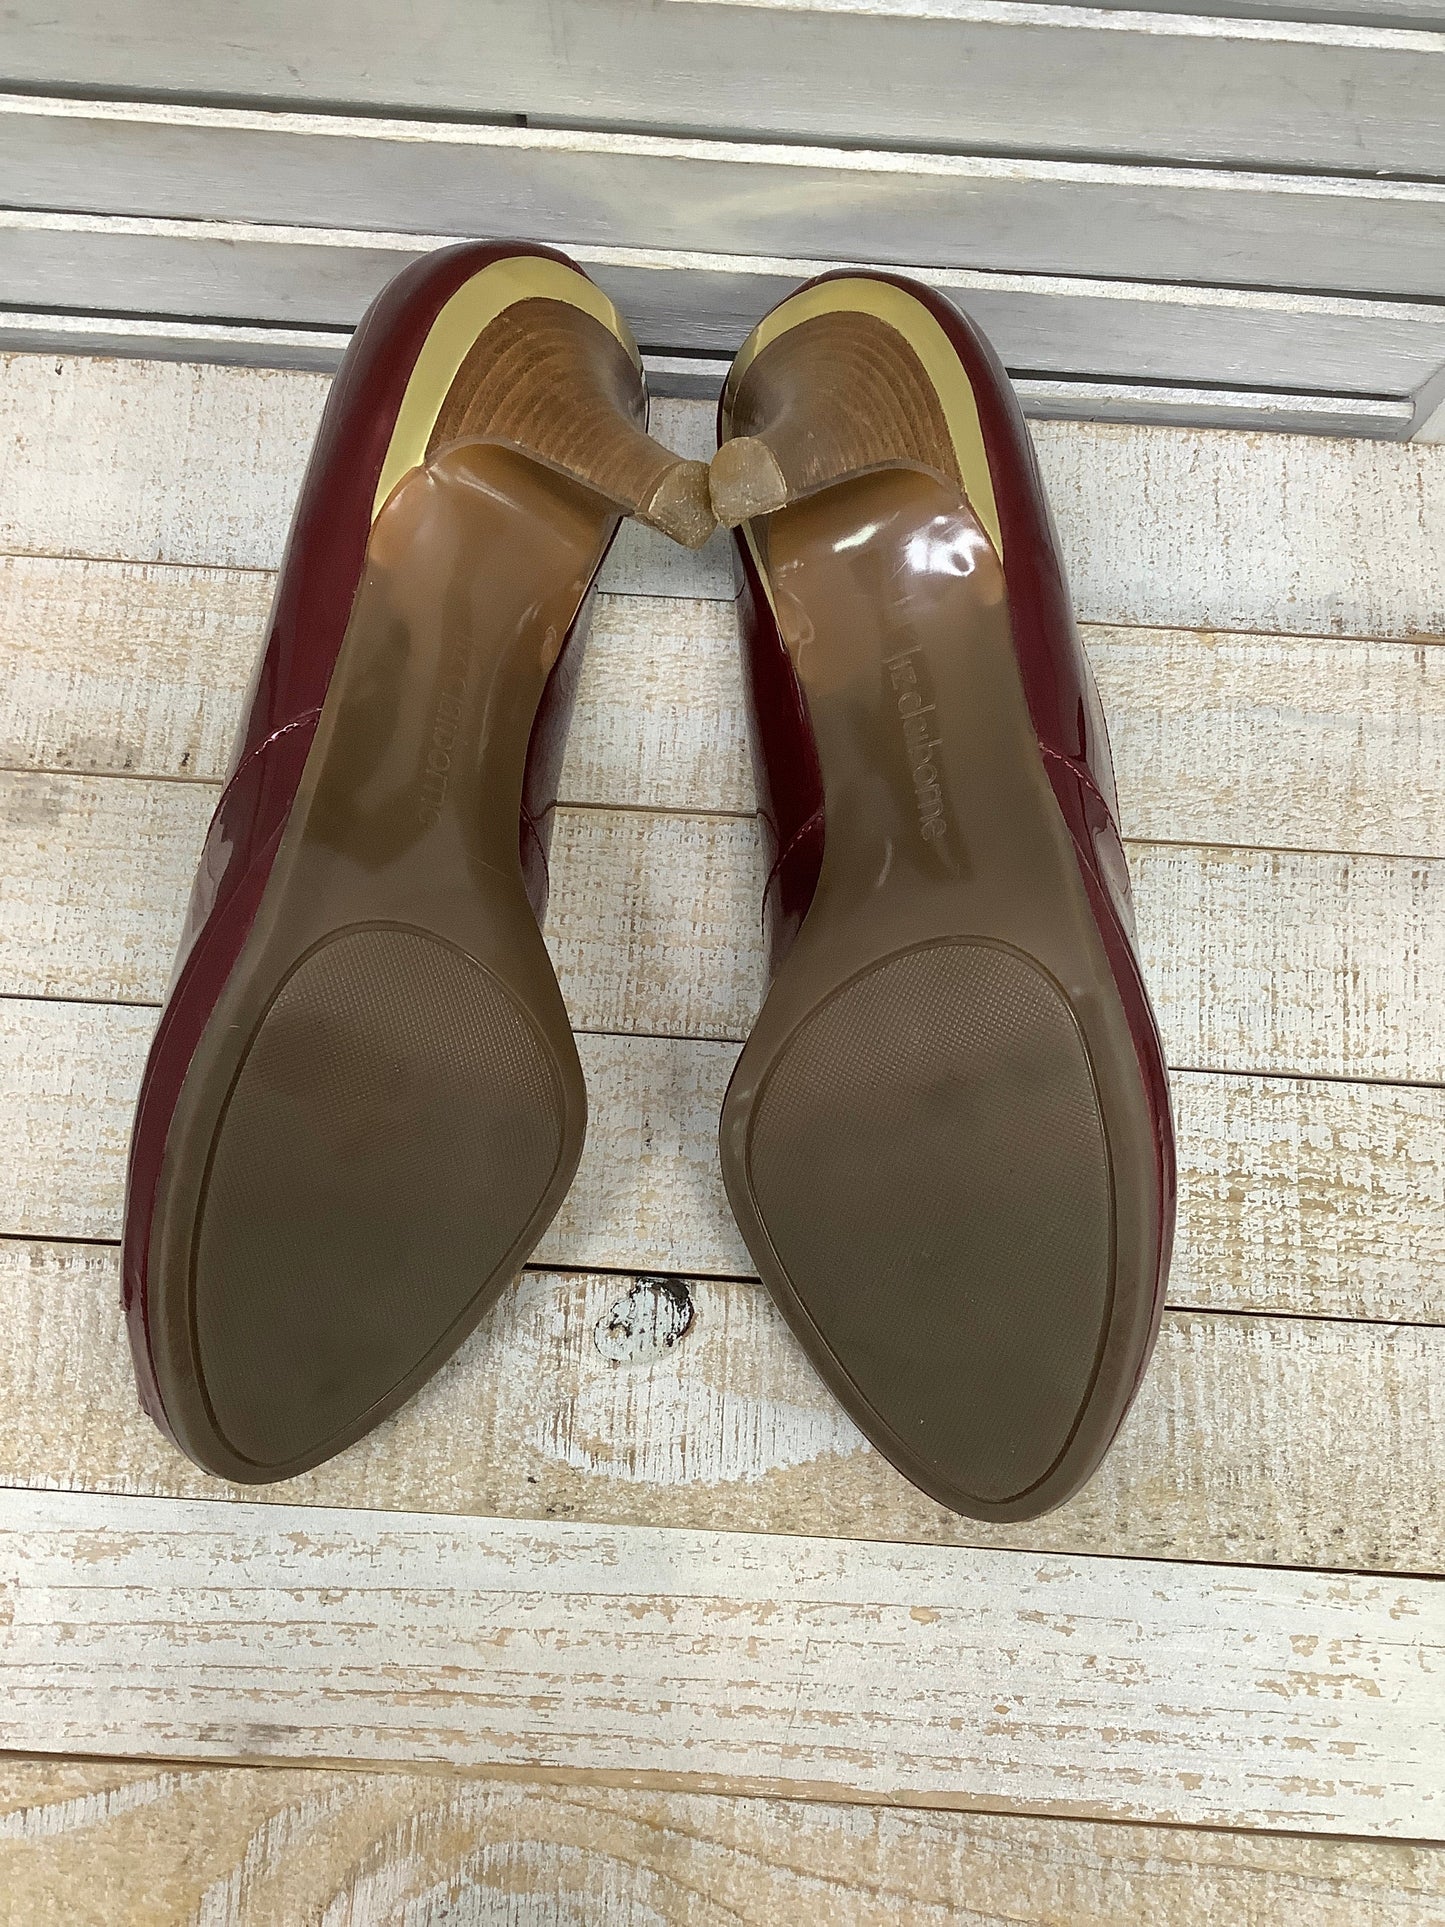 Sandals Heels Stiletto By Liz Claiborne  Size: 8.5